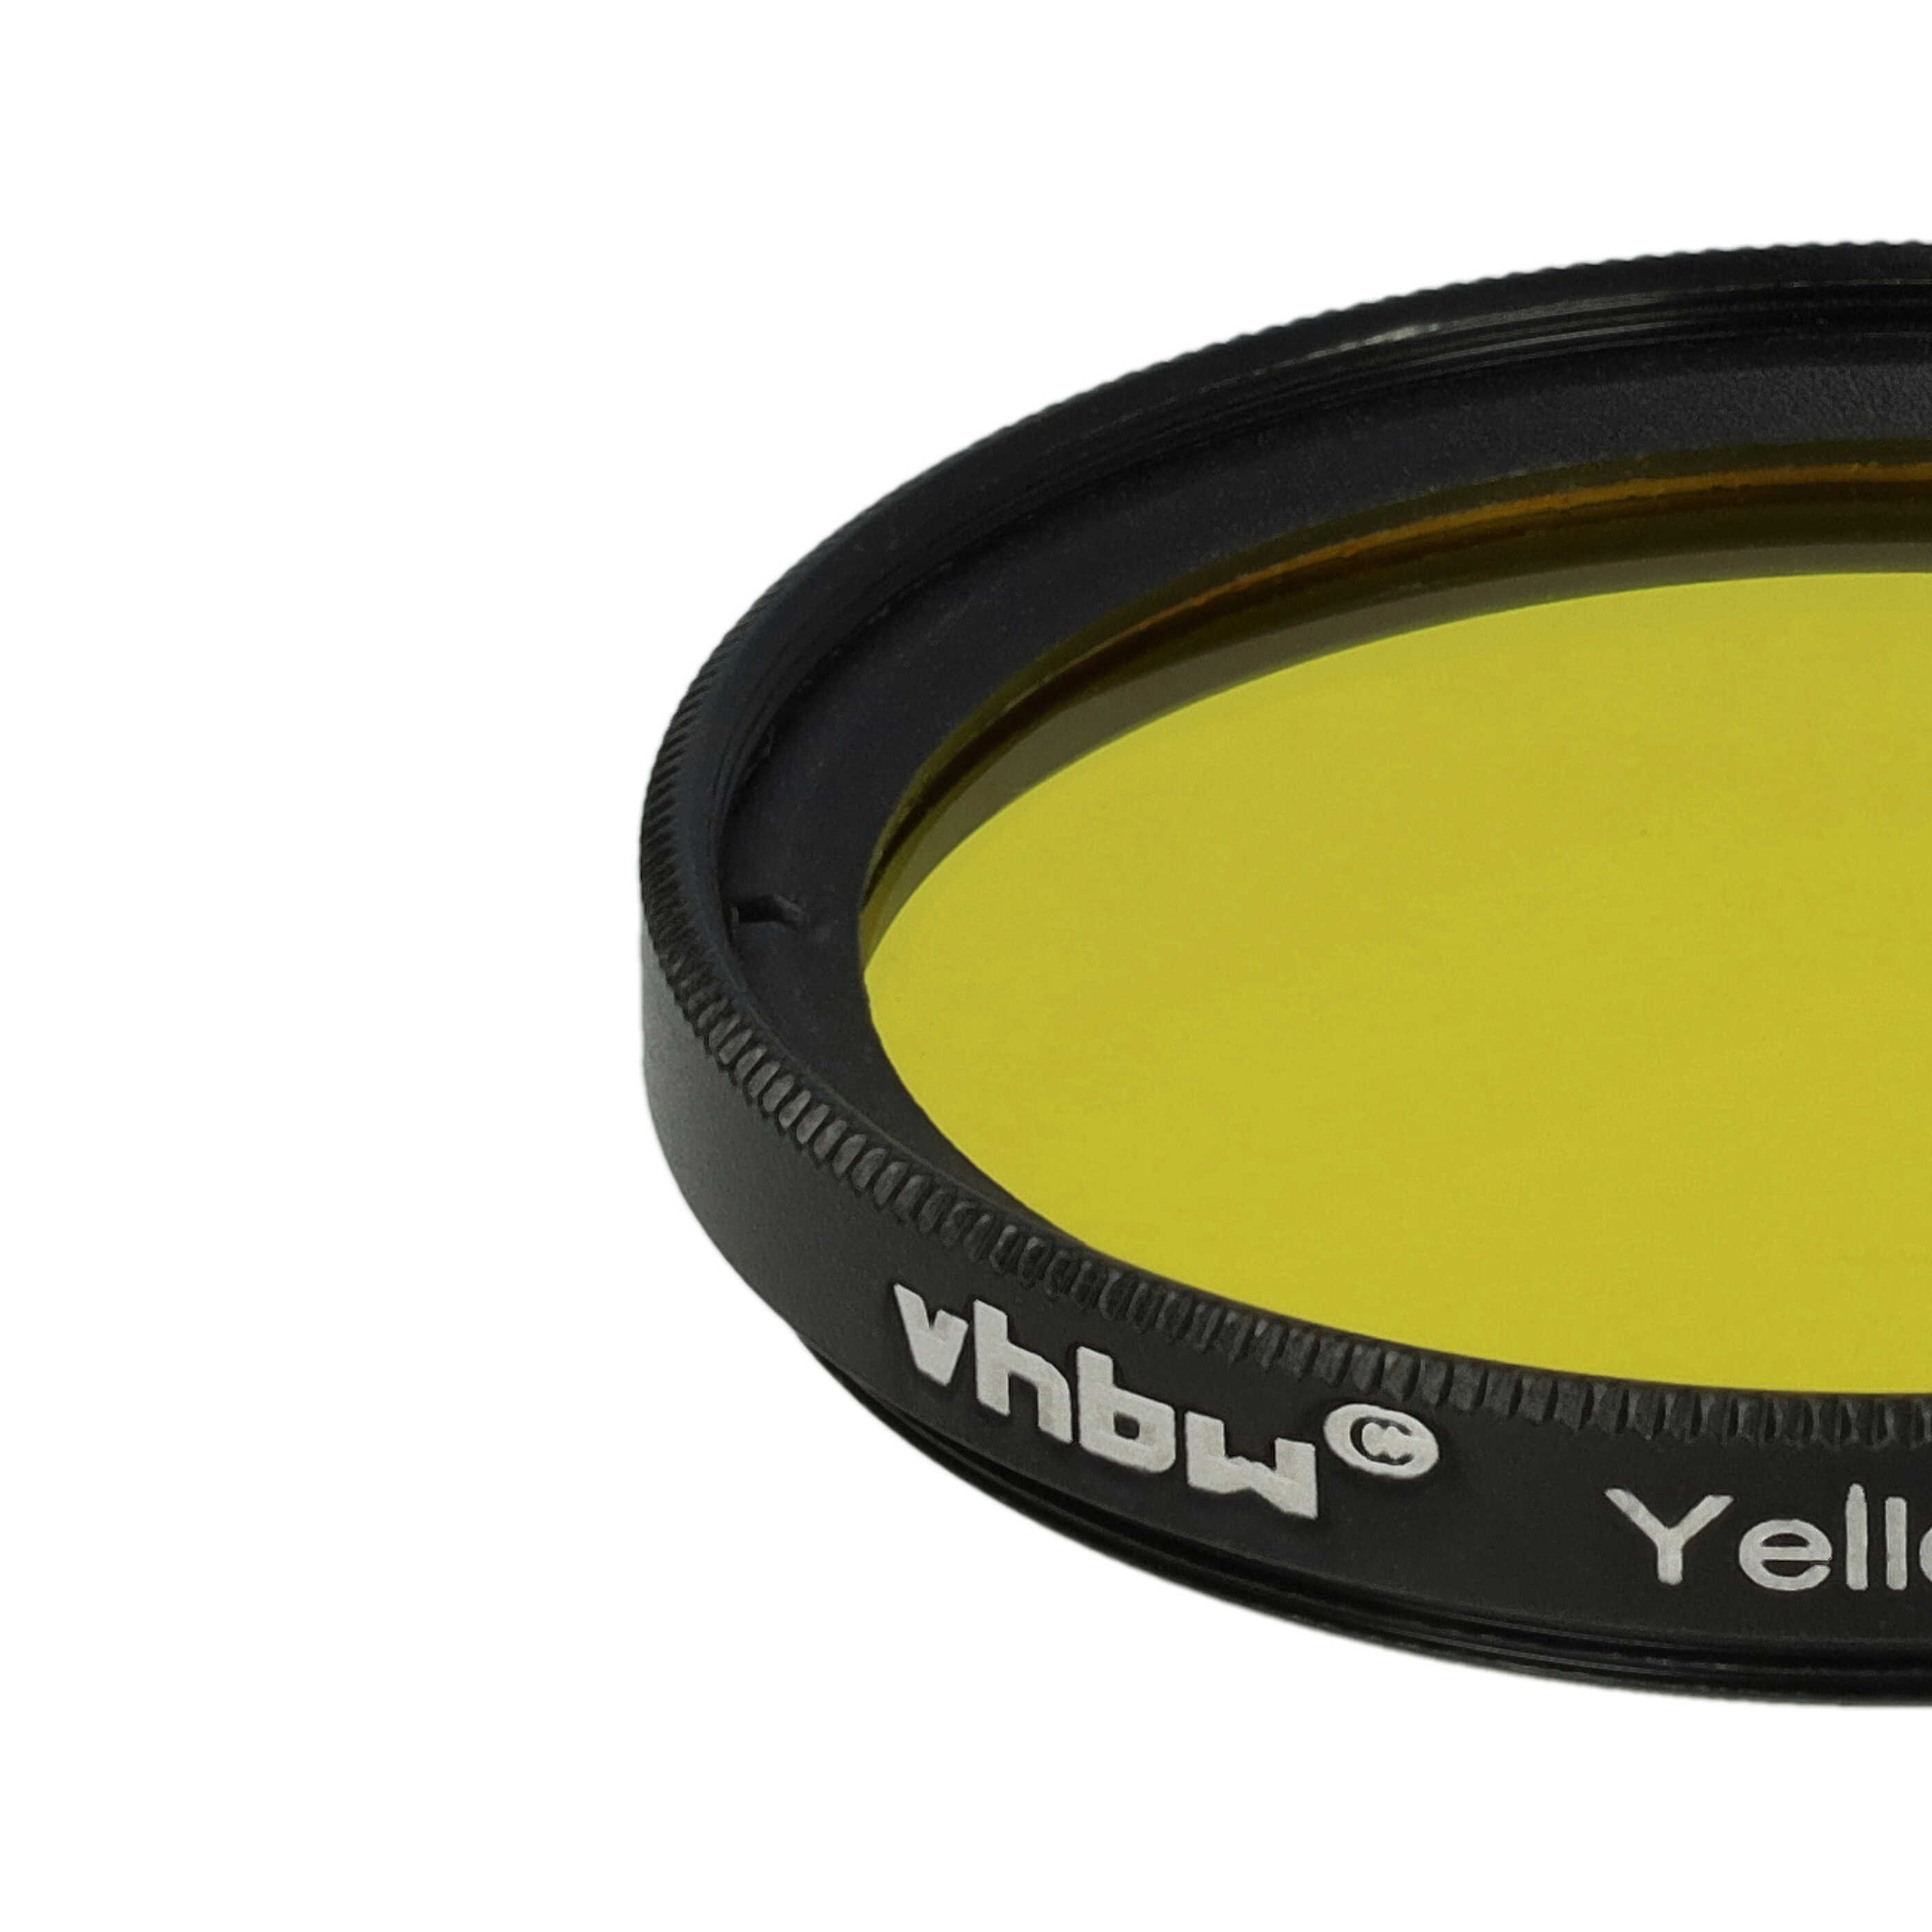 Farbfilter gelb passend für Kamera Objektive mit 40,5 mm Filtergewinde - Gelbfilter